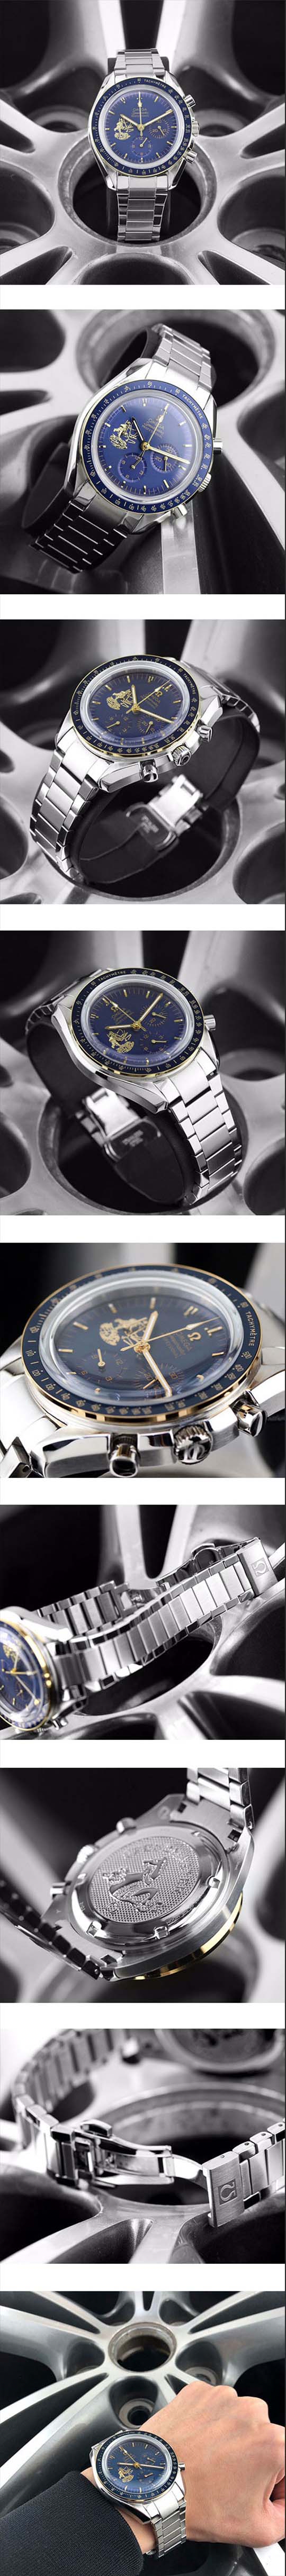 新作掲載 OMEGAコピー時計 スピードマスター アポロ11号50周年記念モデル 310.20.42.50.01.001 クォーツ クロノグラフ